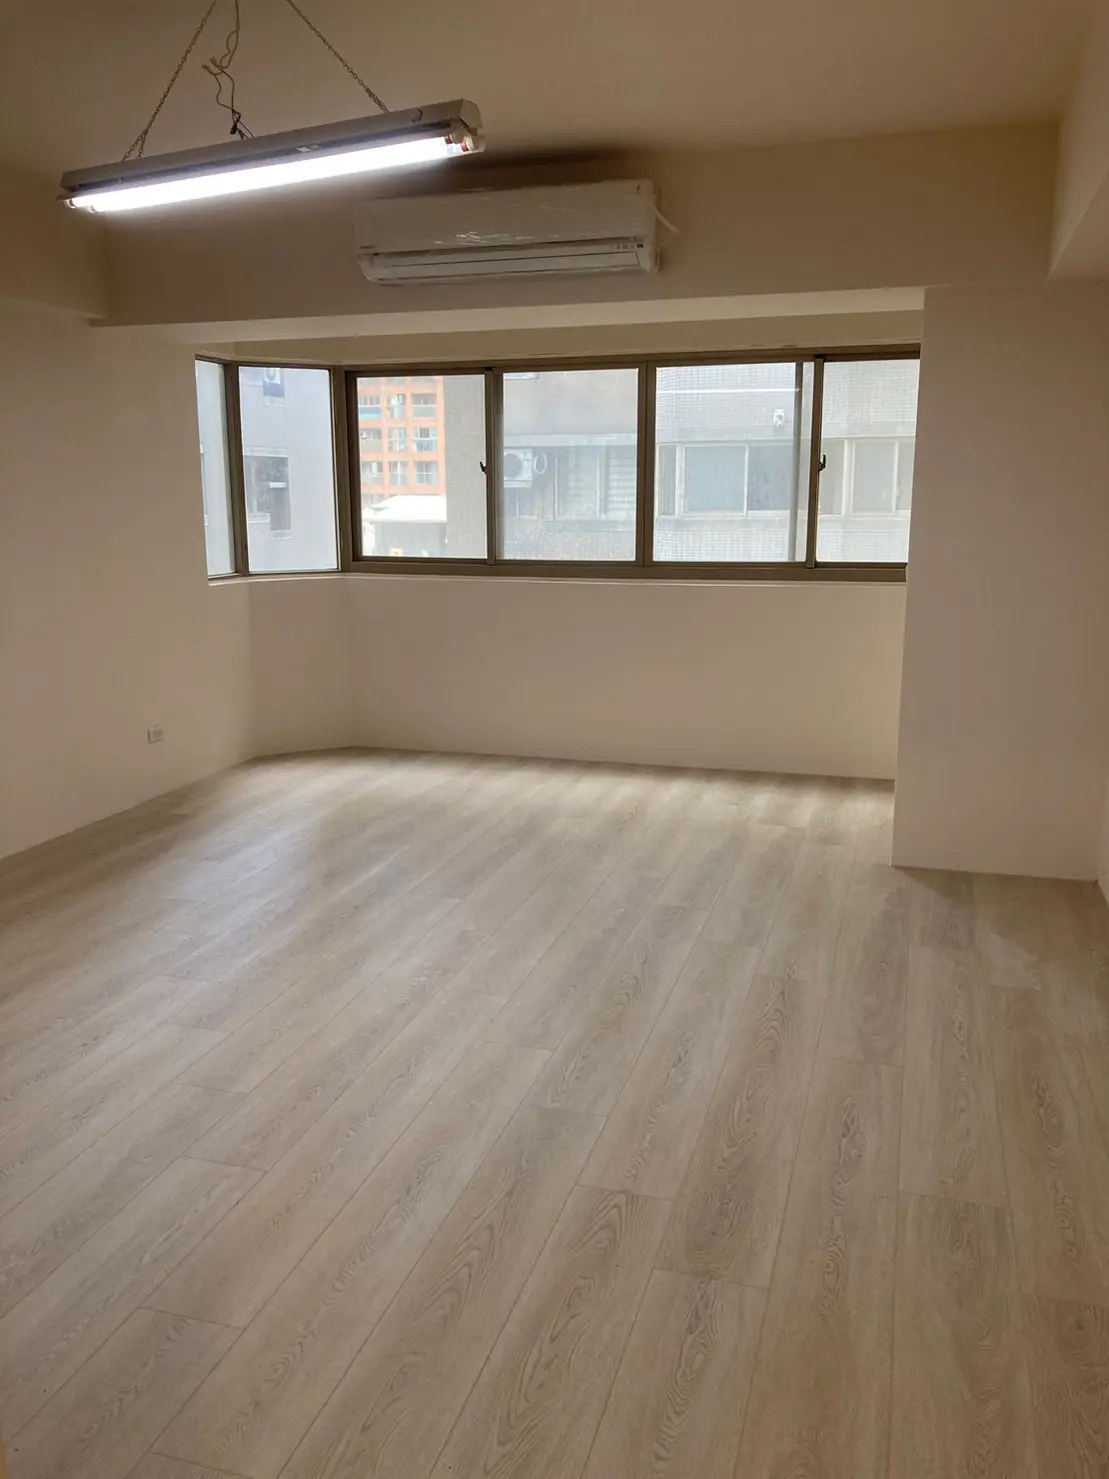 公寓客廳改用木地板